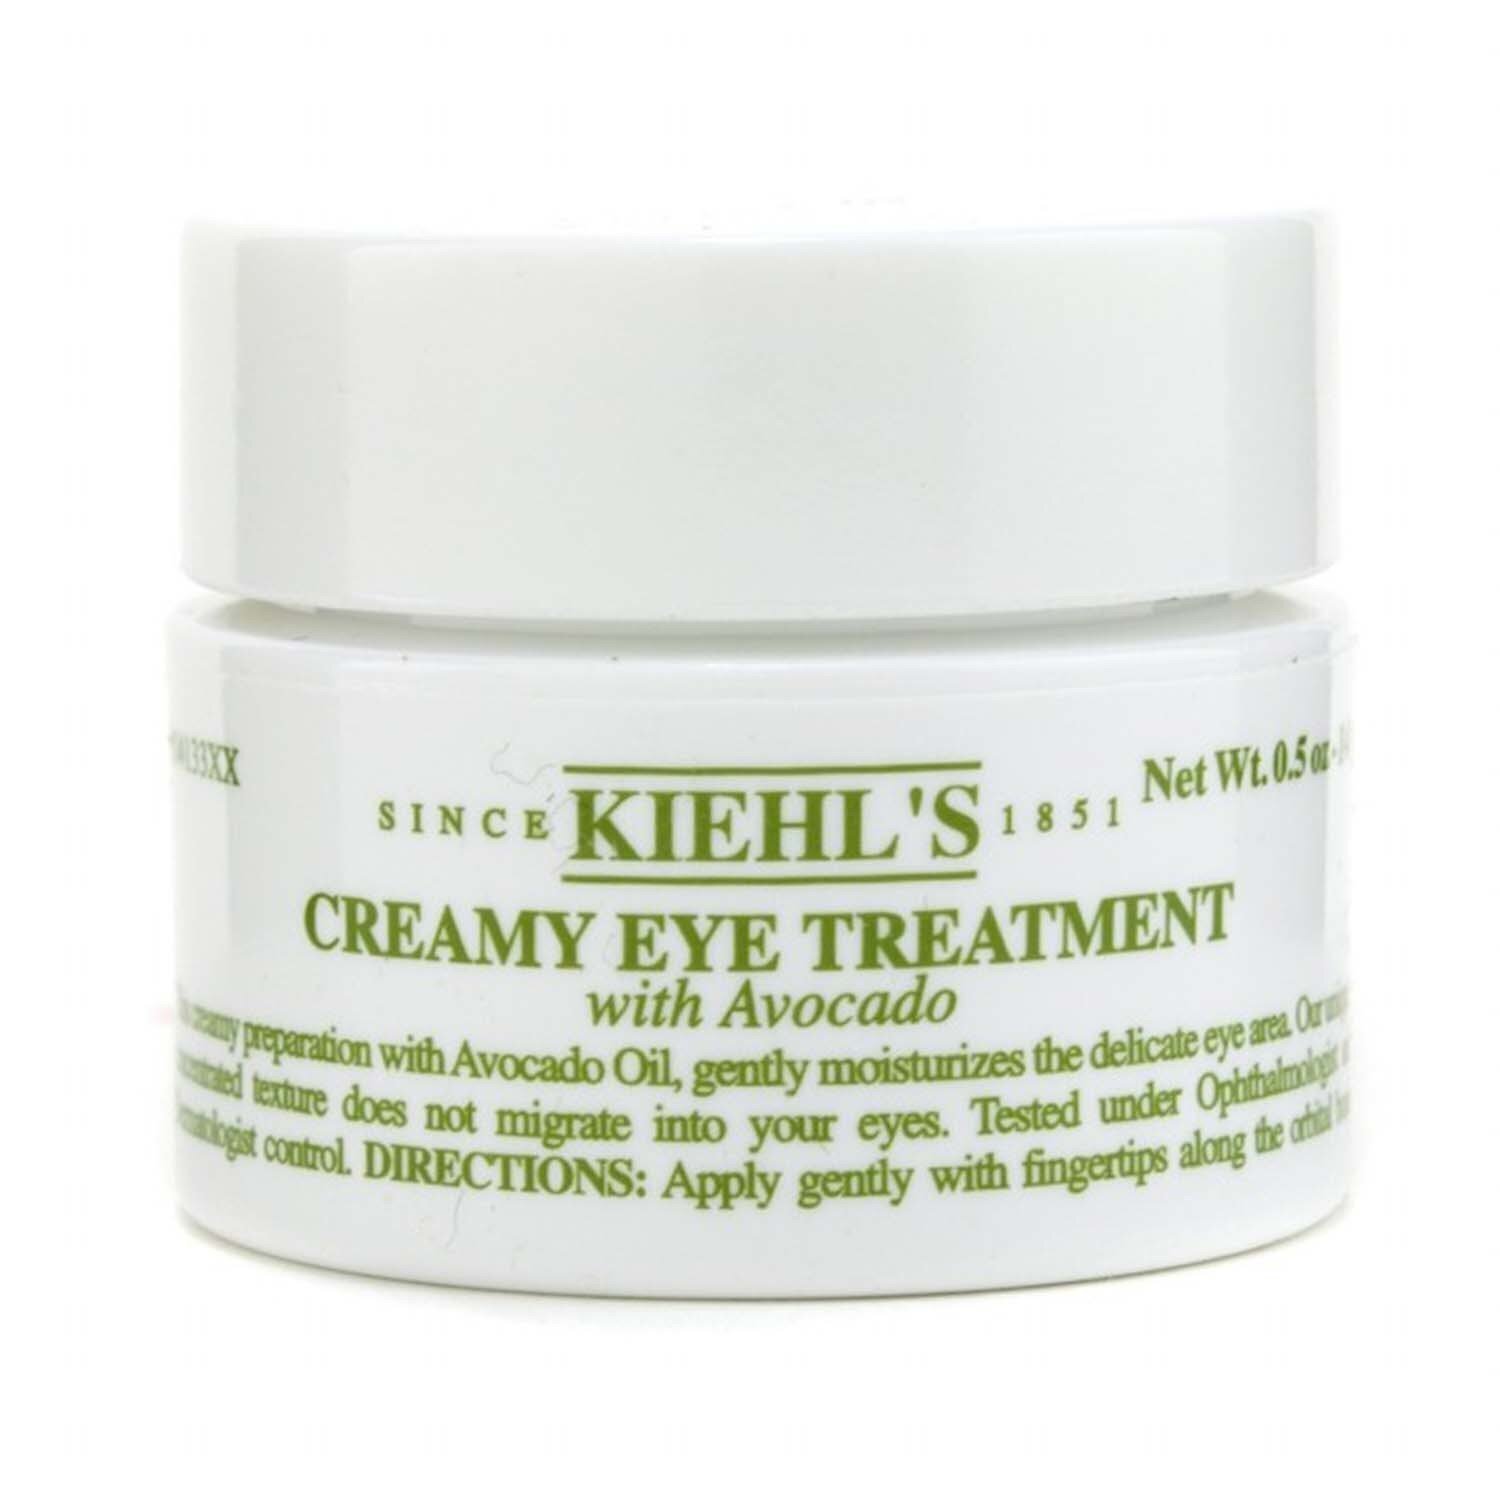 Kiehl's Krem pod oczy z awokado Creamy Eye Treatment with Avocado 14ml/0.5oz